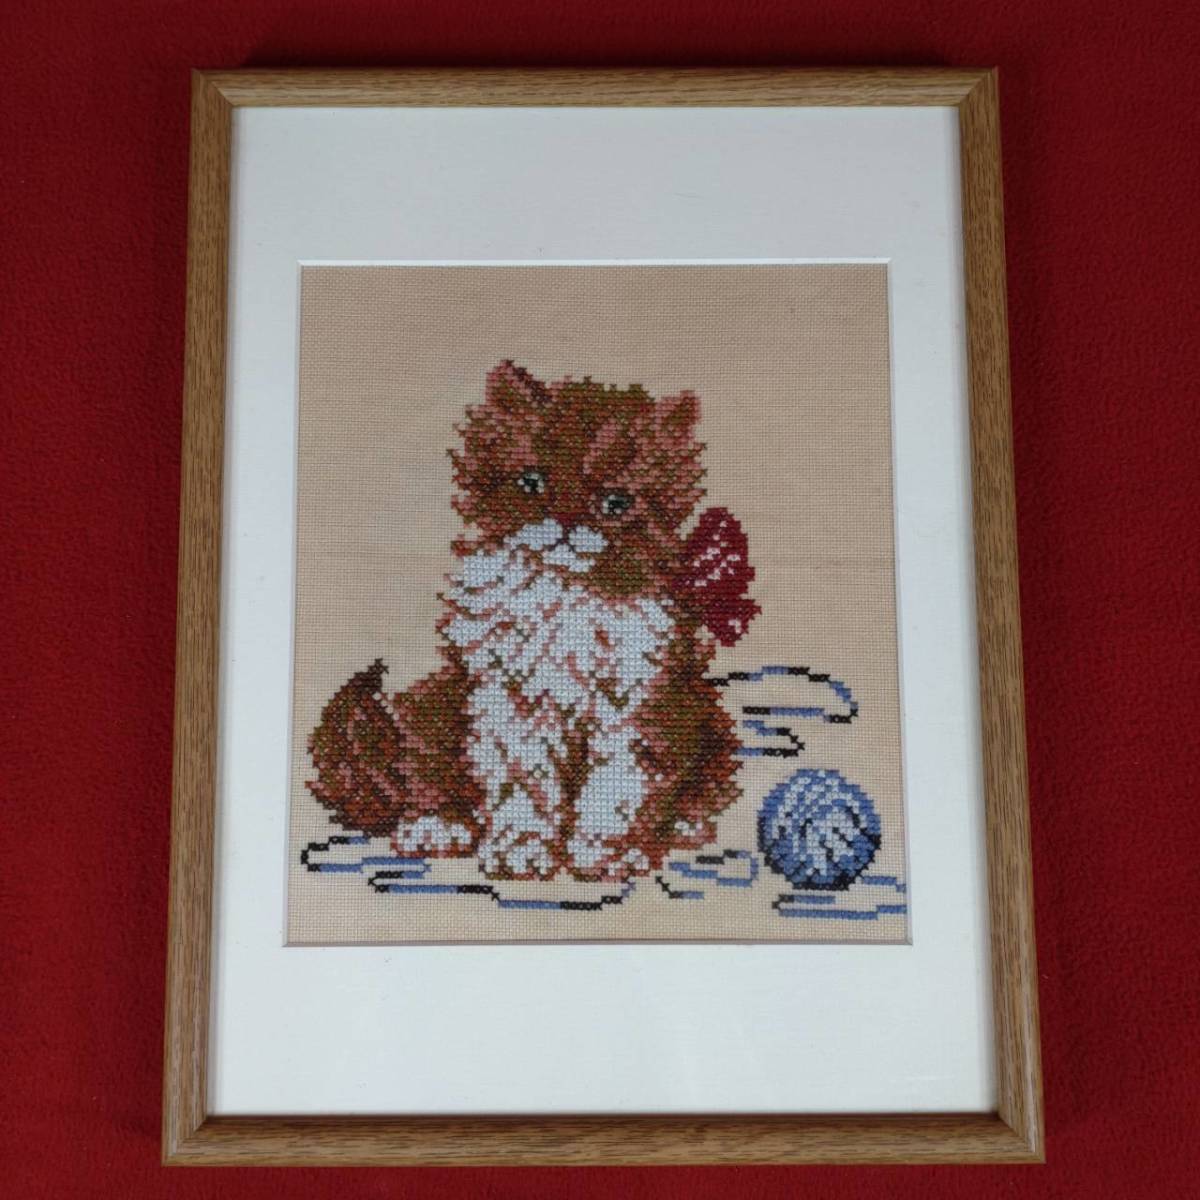 Imagen de bordado de gato enmarcado hecho a mano artesanía pared colgante interior oficina tienda decoración colección diseño estilo occidental, de coser, bordado, bordado, Producto terminado